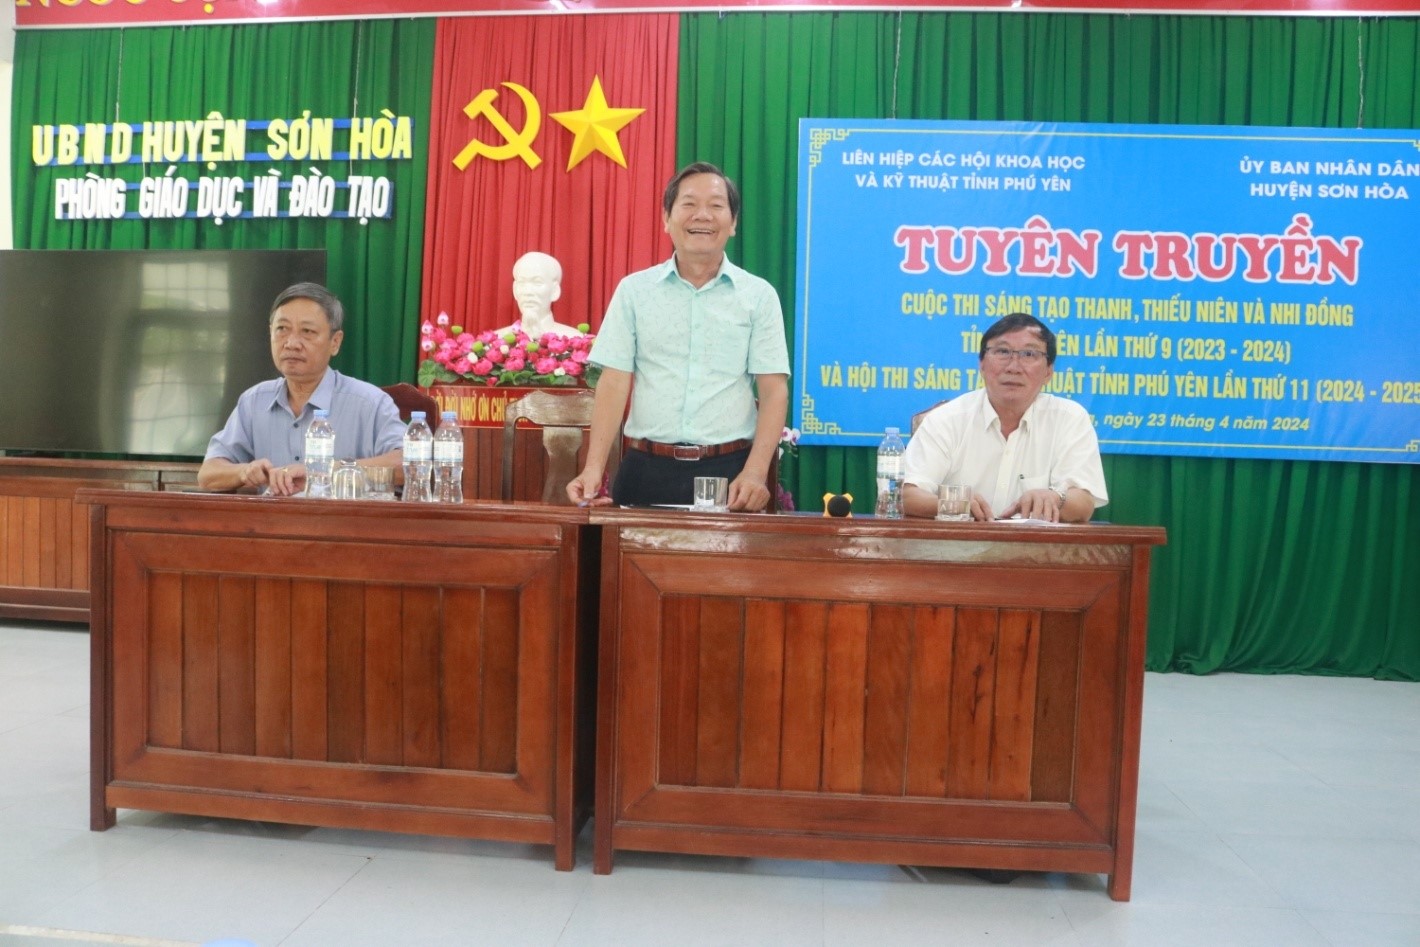 Ông Nguyễn Văn Khoa, Chủ tịch Liên hiệp Hội Phú Yên, Trưởng ban Tổ chức Cuộc thi lần thứ 9 và Hội thi lần thứ 11 phát biểu